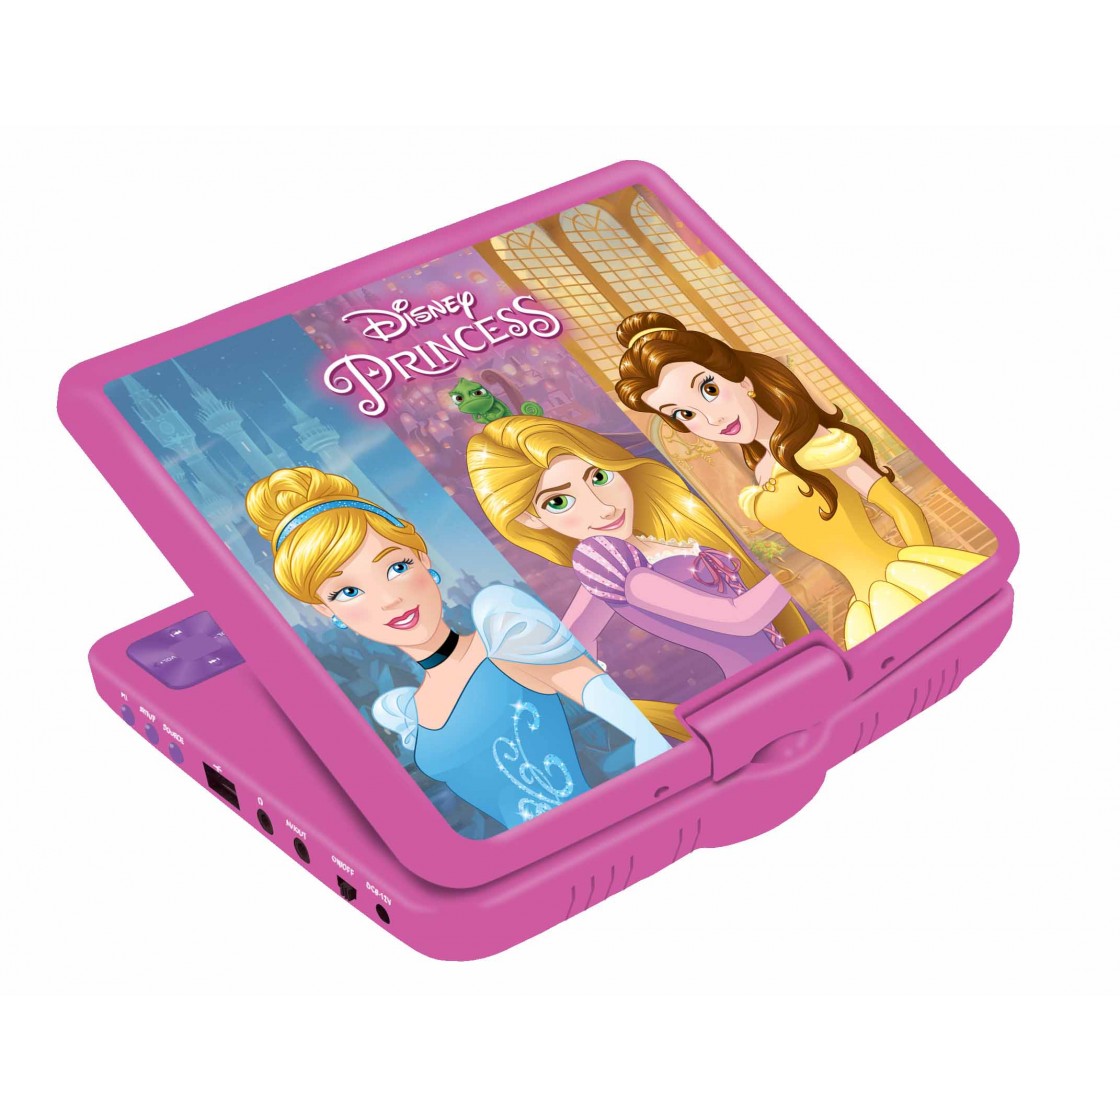 Lecteur DVD portable Princesses